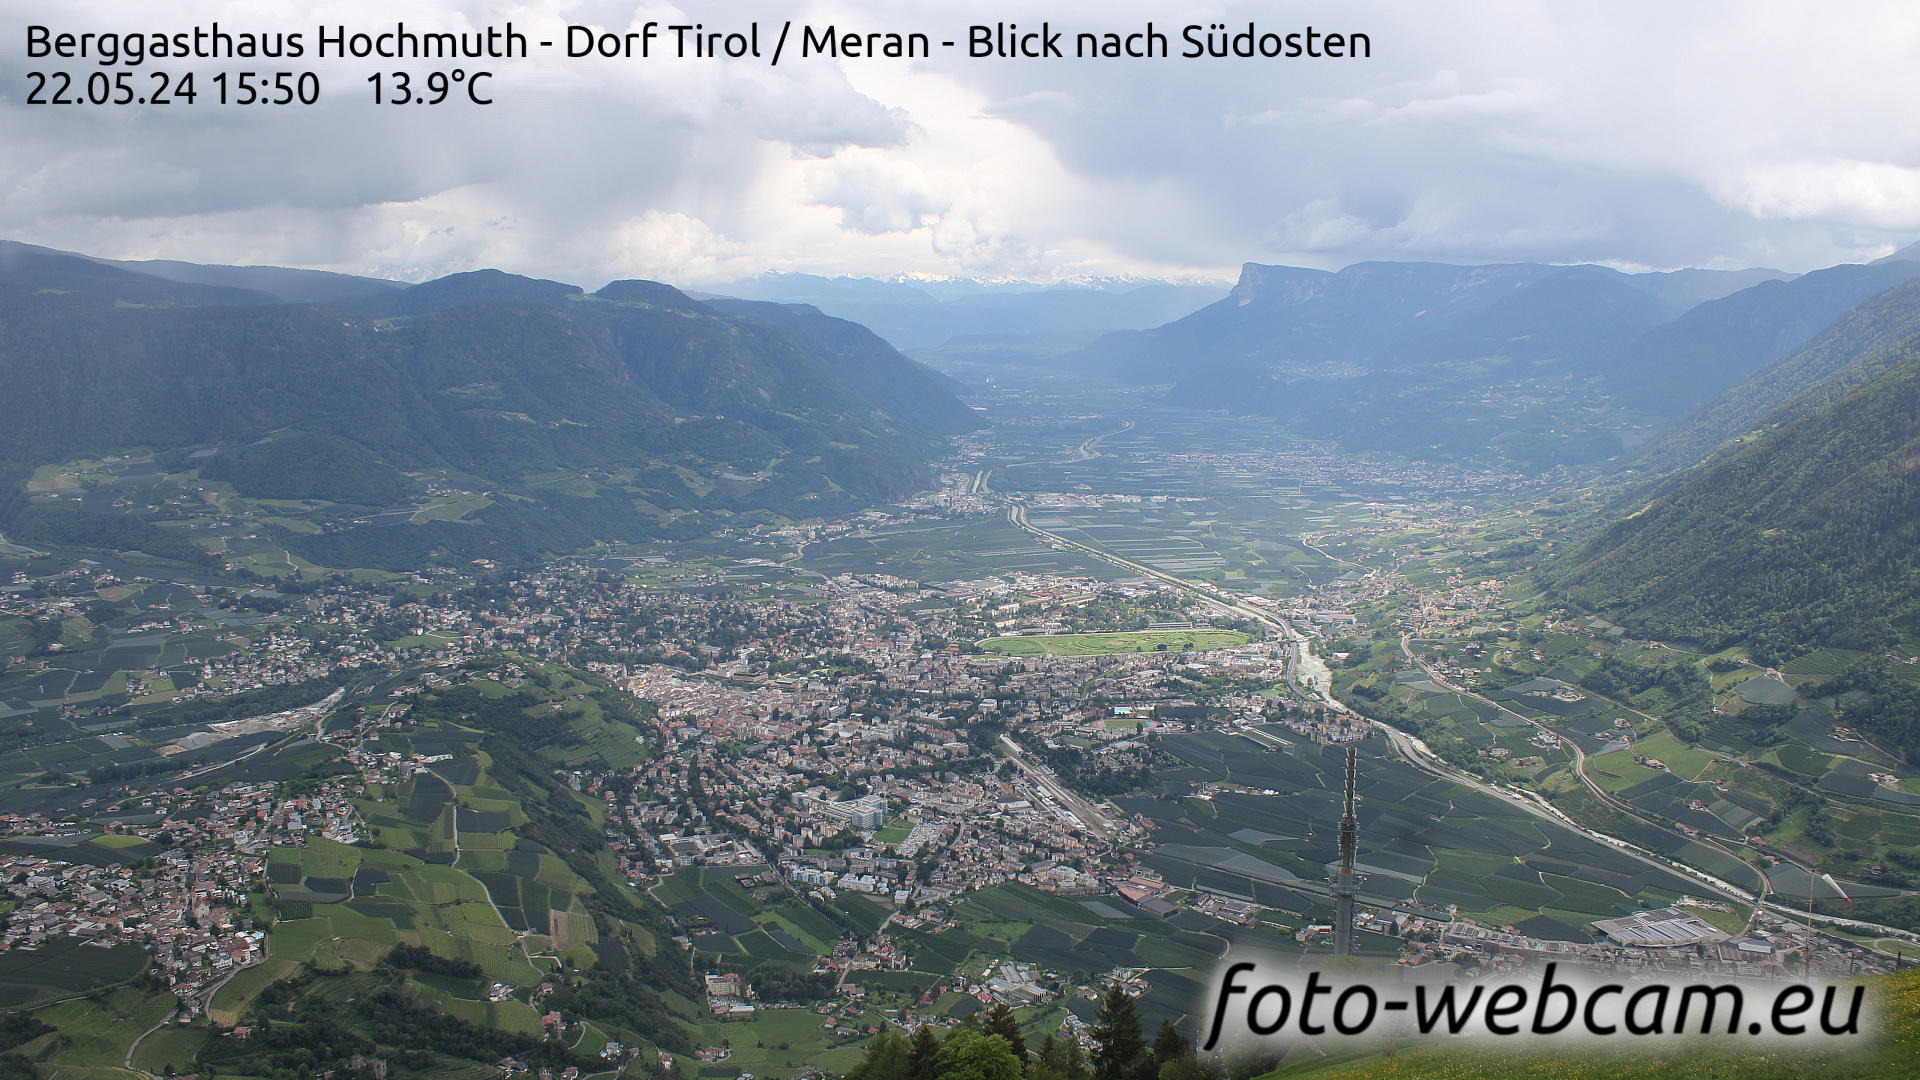 Dorf Tirol Tir. 15:56